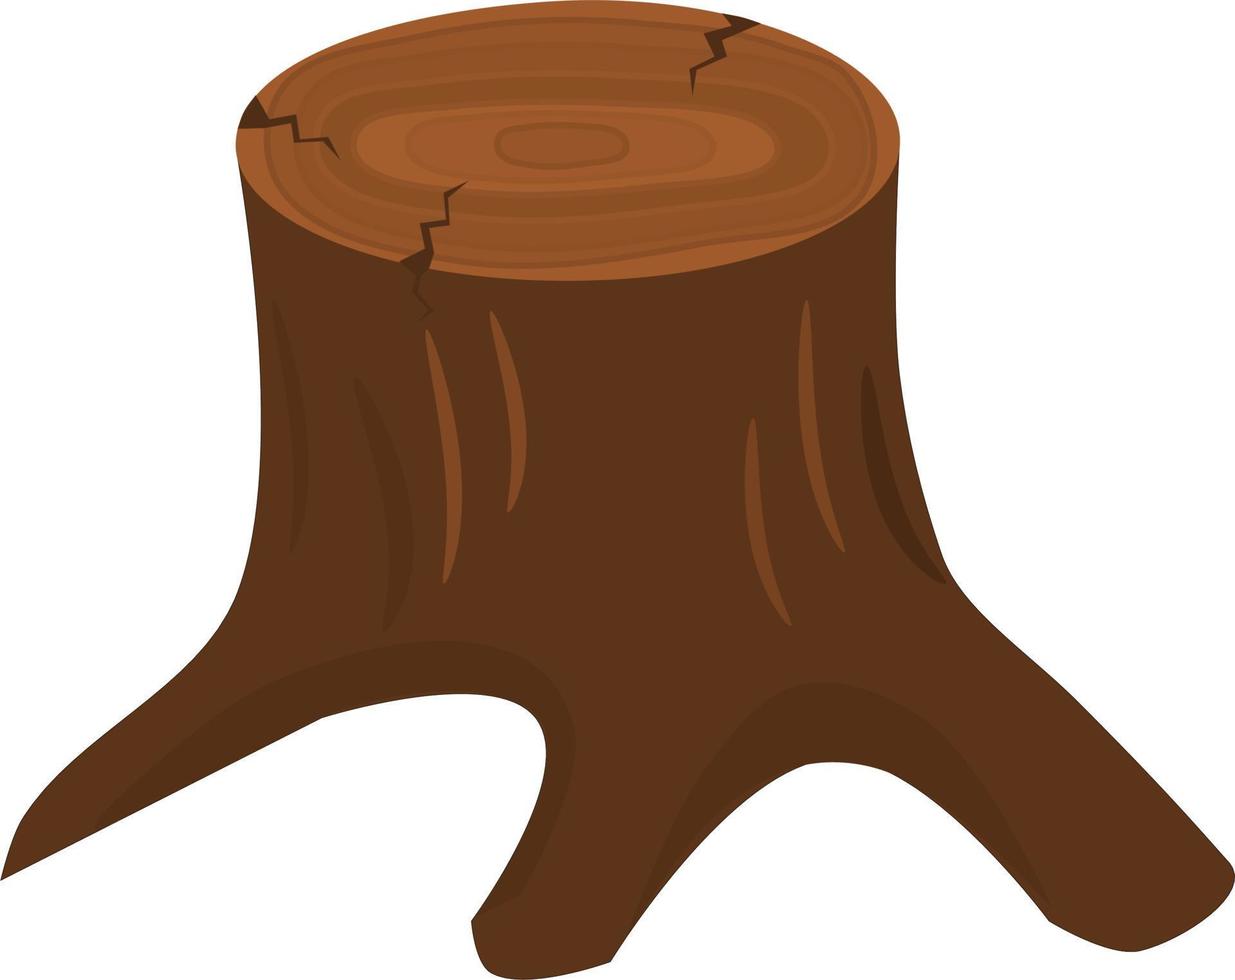 tree stump. vector illustration.